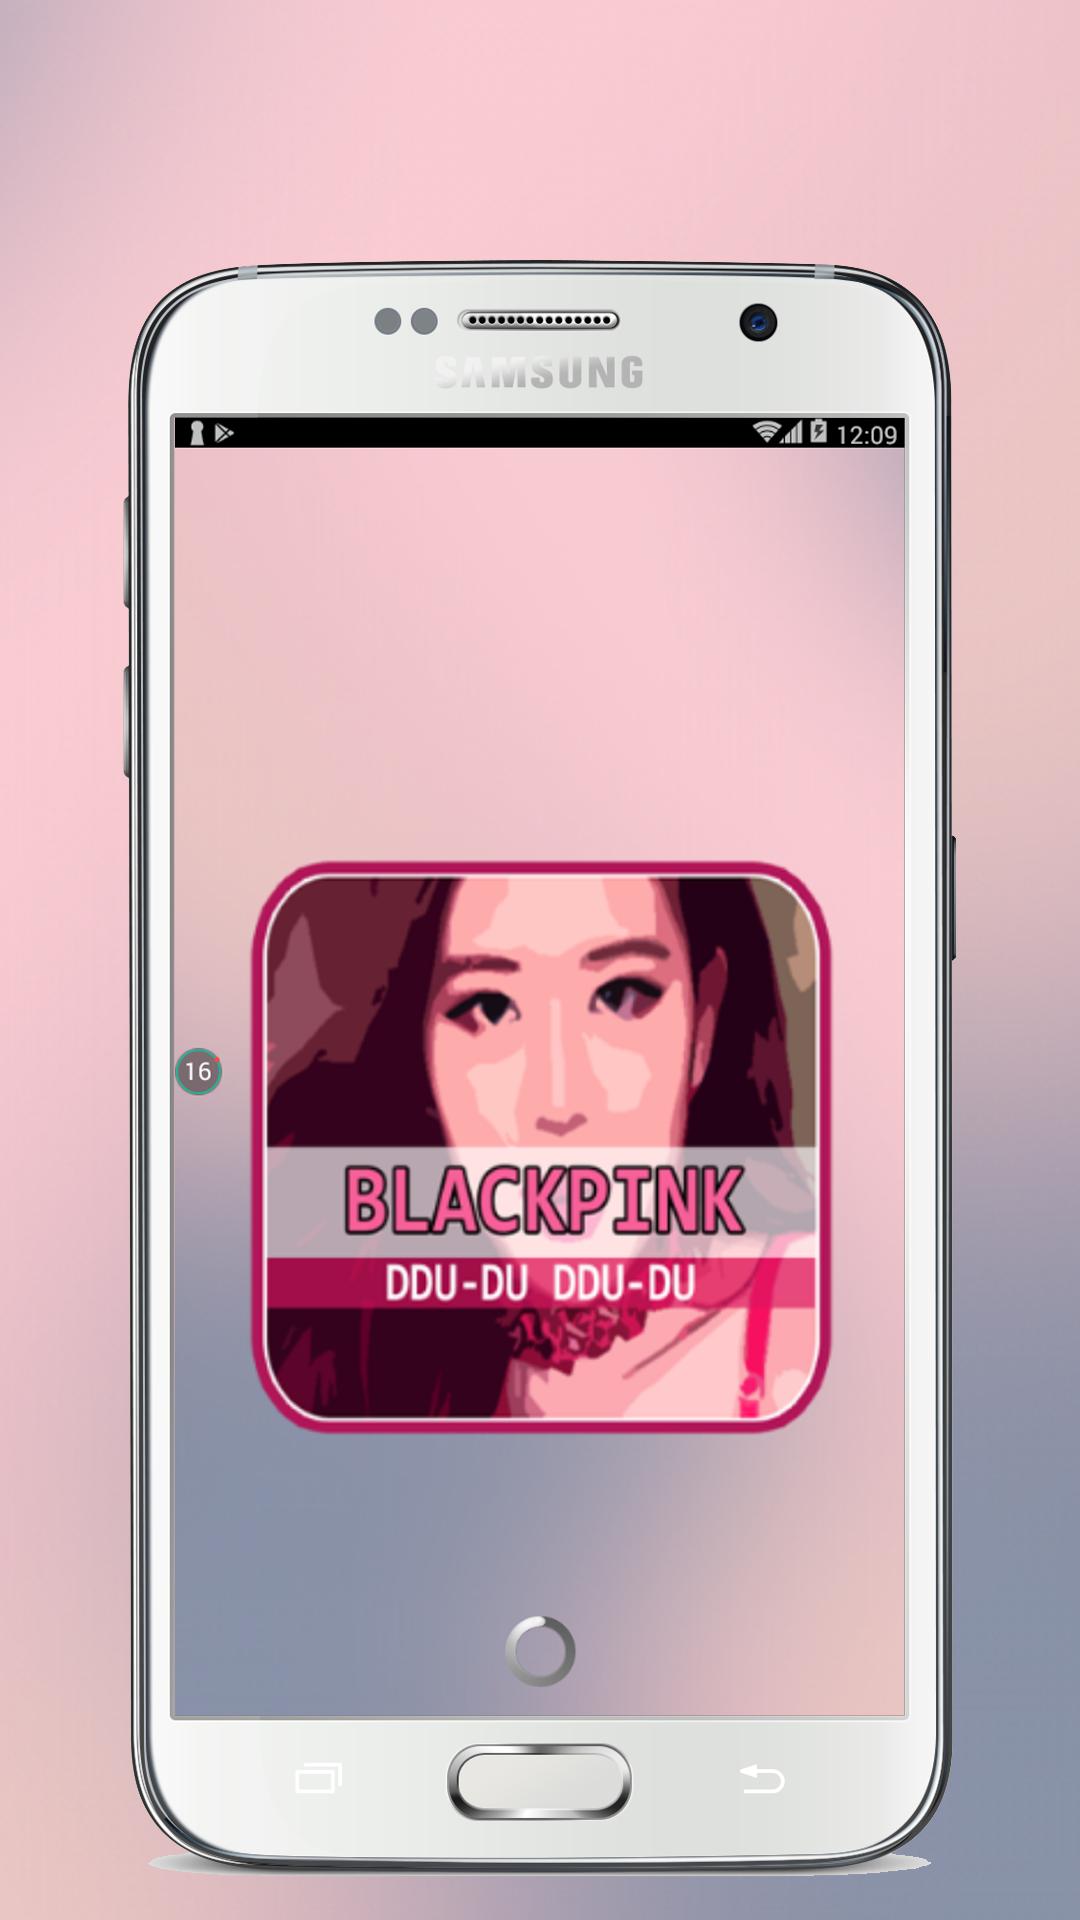 BLACKPINK DDU DU DDU DU Full Lirik For Android APK Download